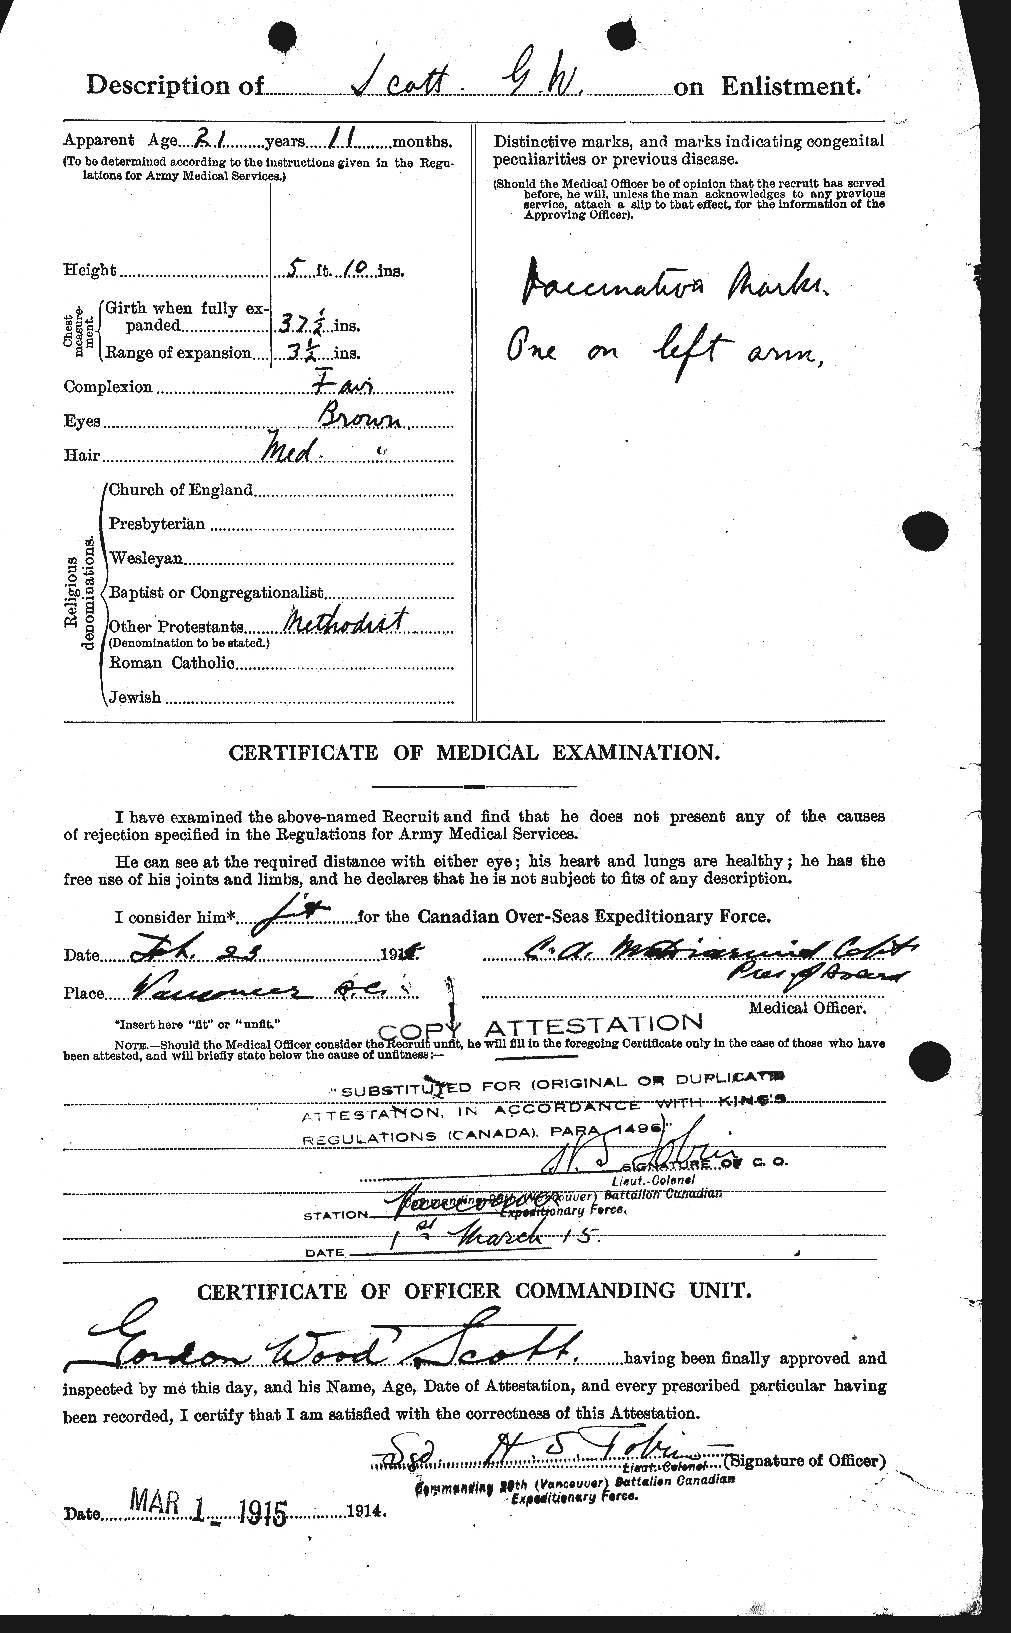 Dossiers du Personnel de la Première Guerre mondiale - CEC 086511b